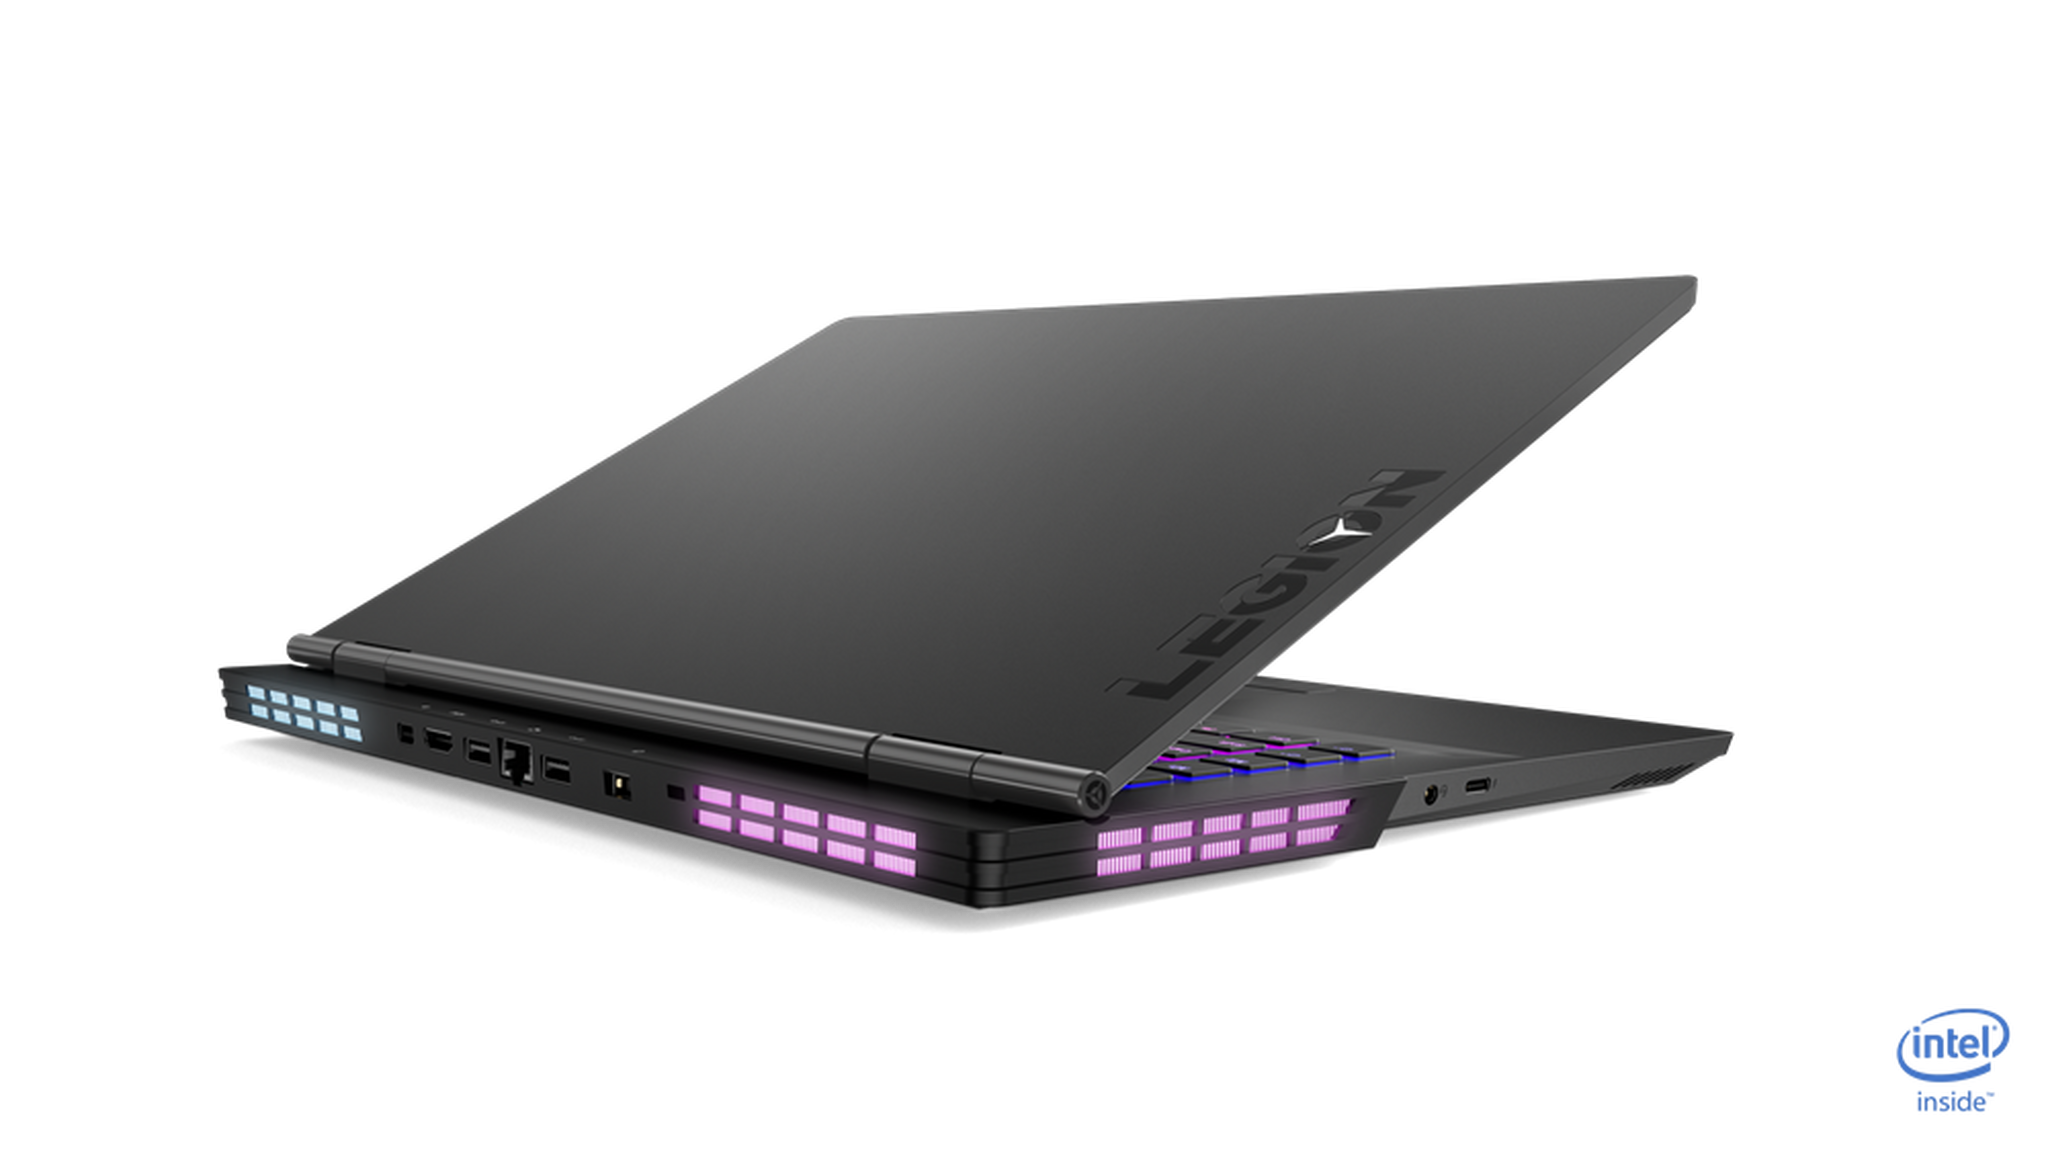 Lenovo Legion Y740 RTX 2070 16GB Core i7 8GB RAM 1TB HDD + 512GB SSD 15.6-inch Gaming Laptop – Iron Grey